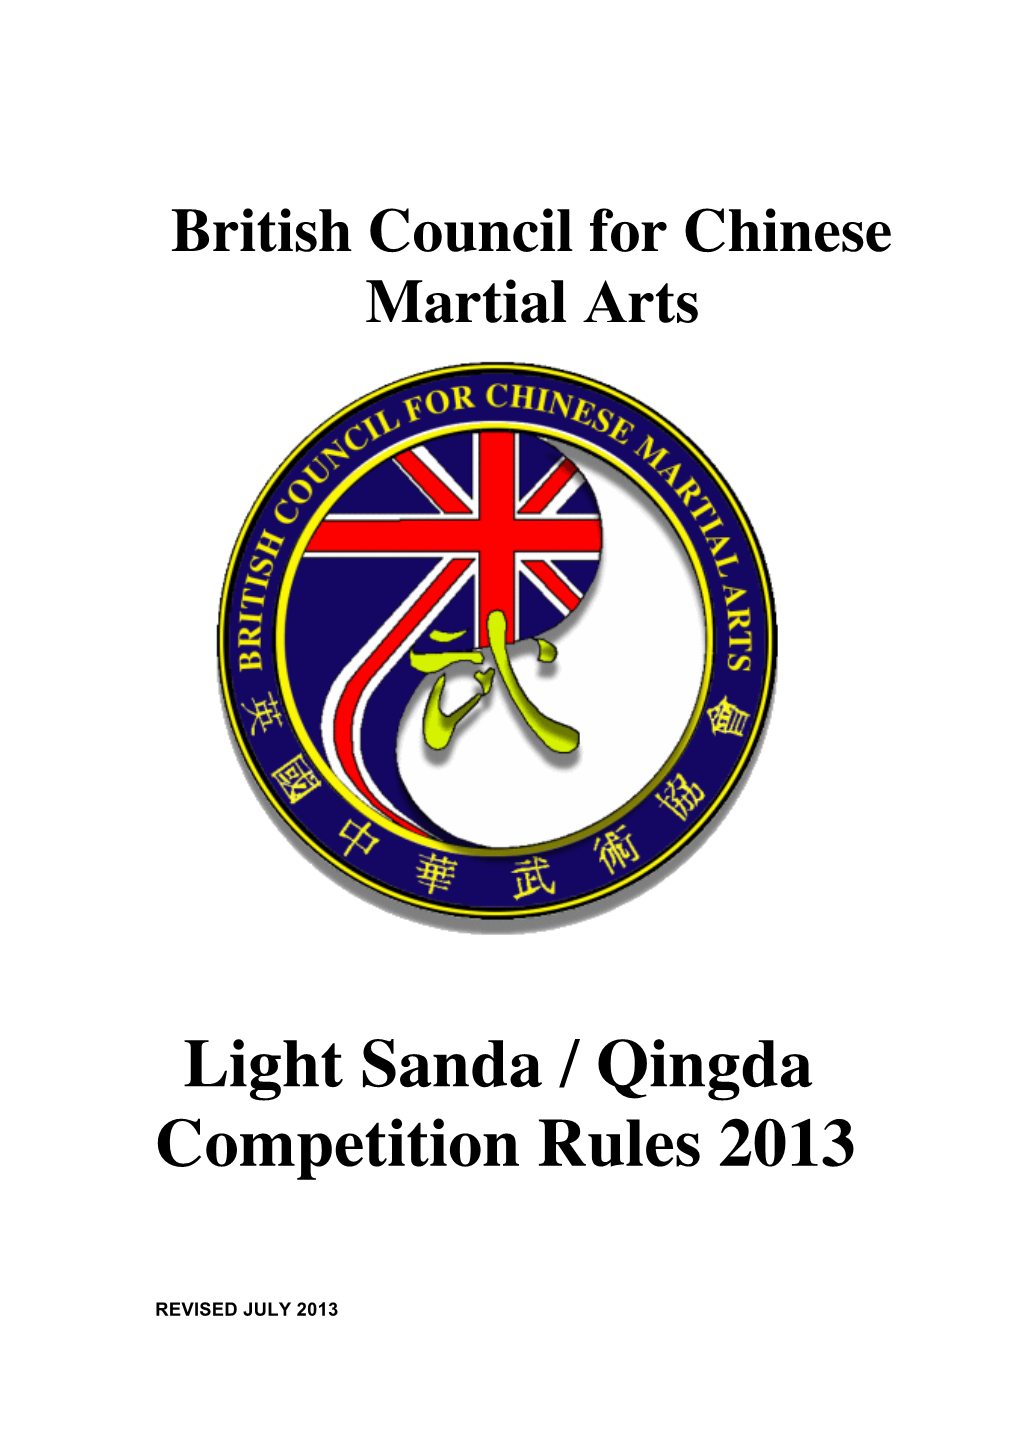 Light Sanda / Qingda Competition Rules 2013